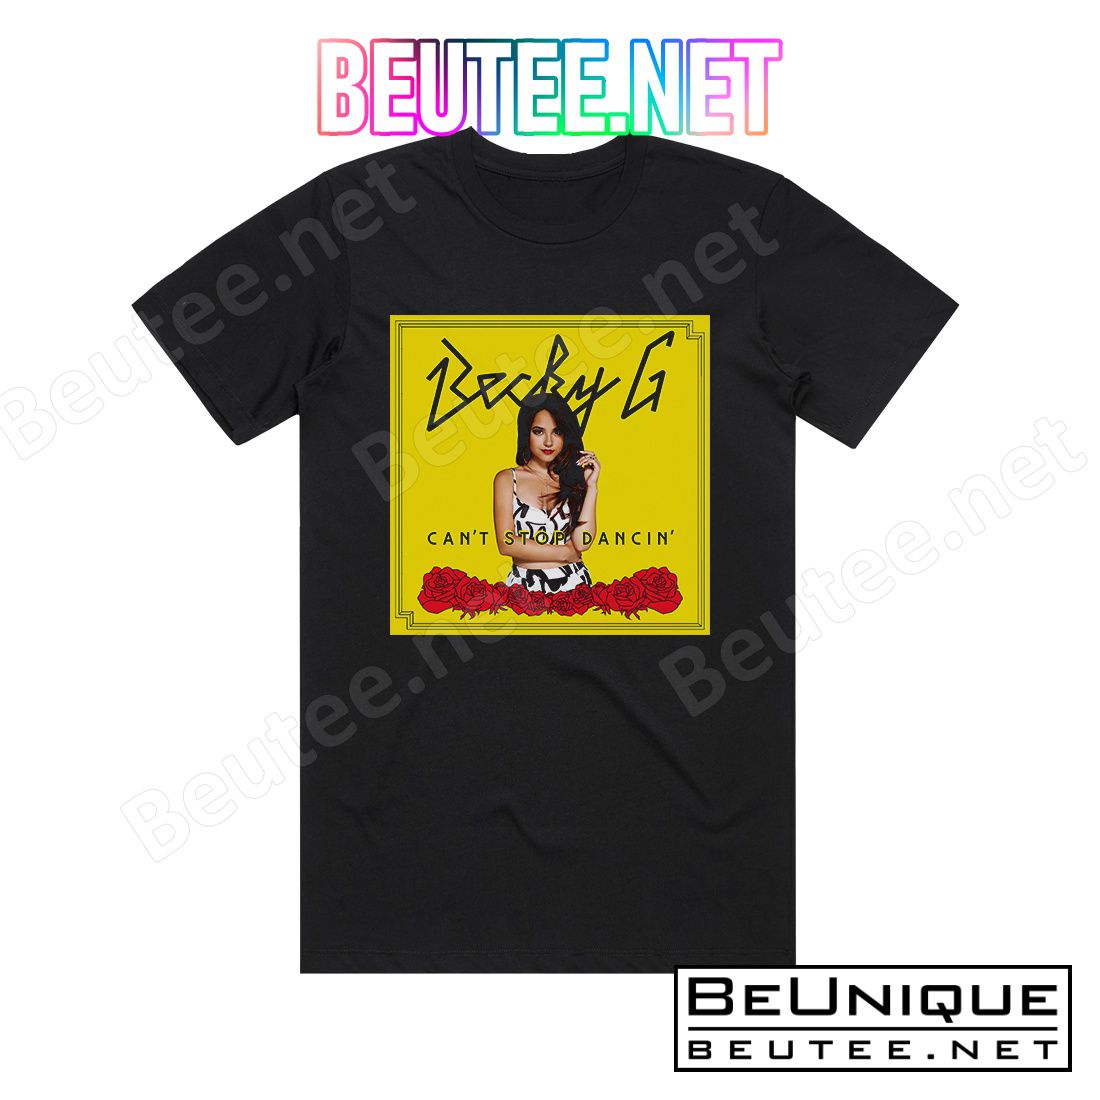 Becky G Can't Stop Dancin' Album Cover T-Shirt